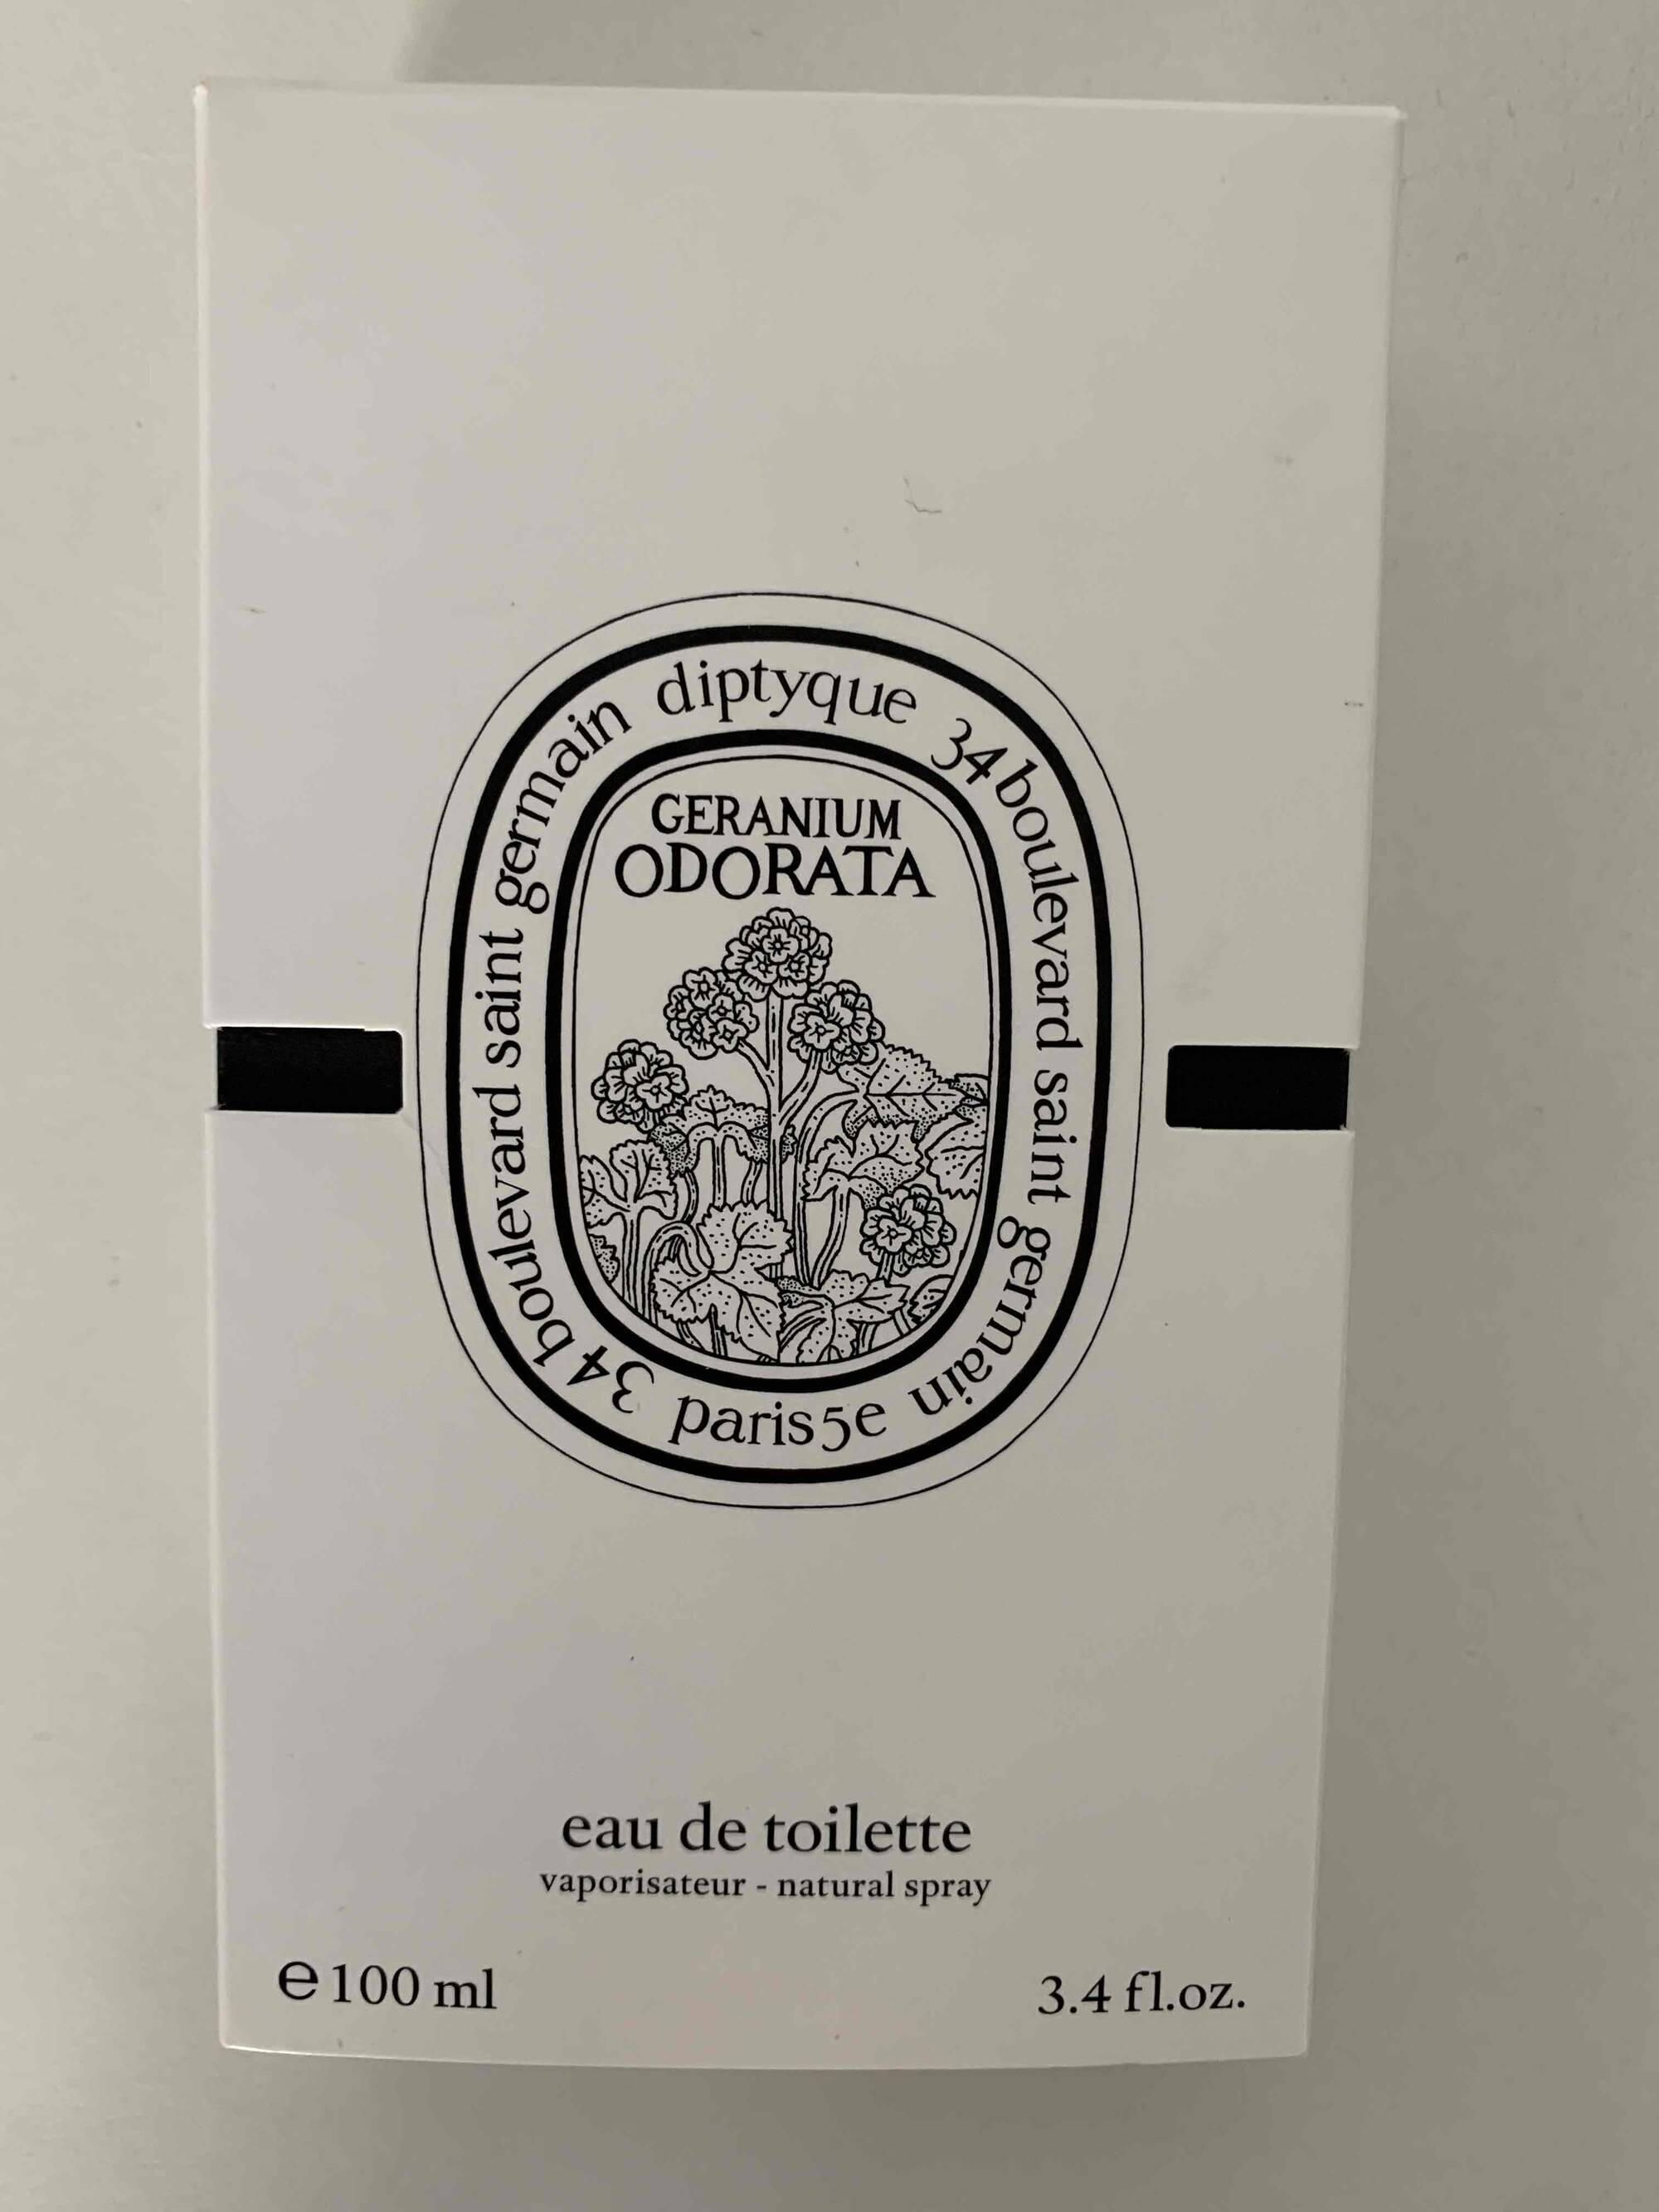 DIPTYQUE - Géranium odorata - Eau de toilette